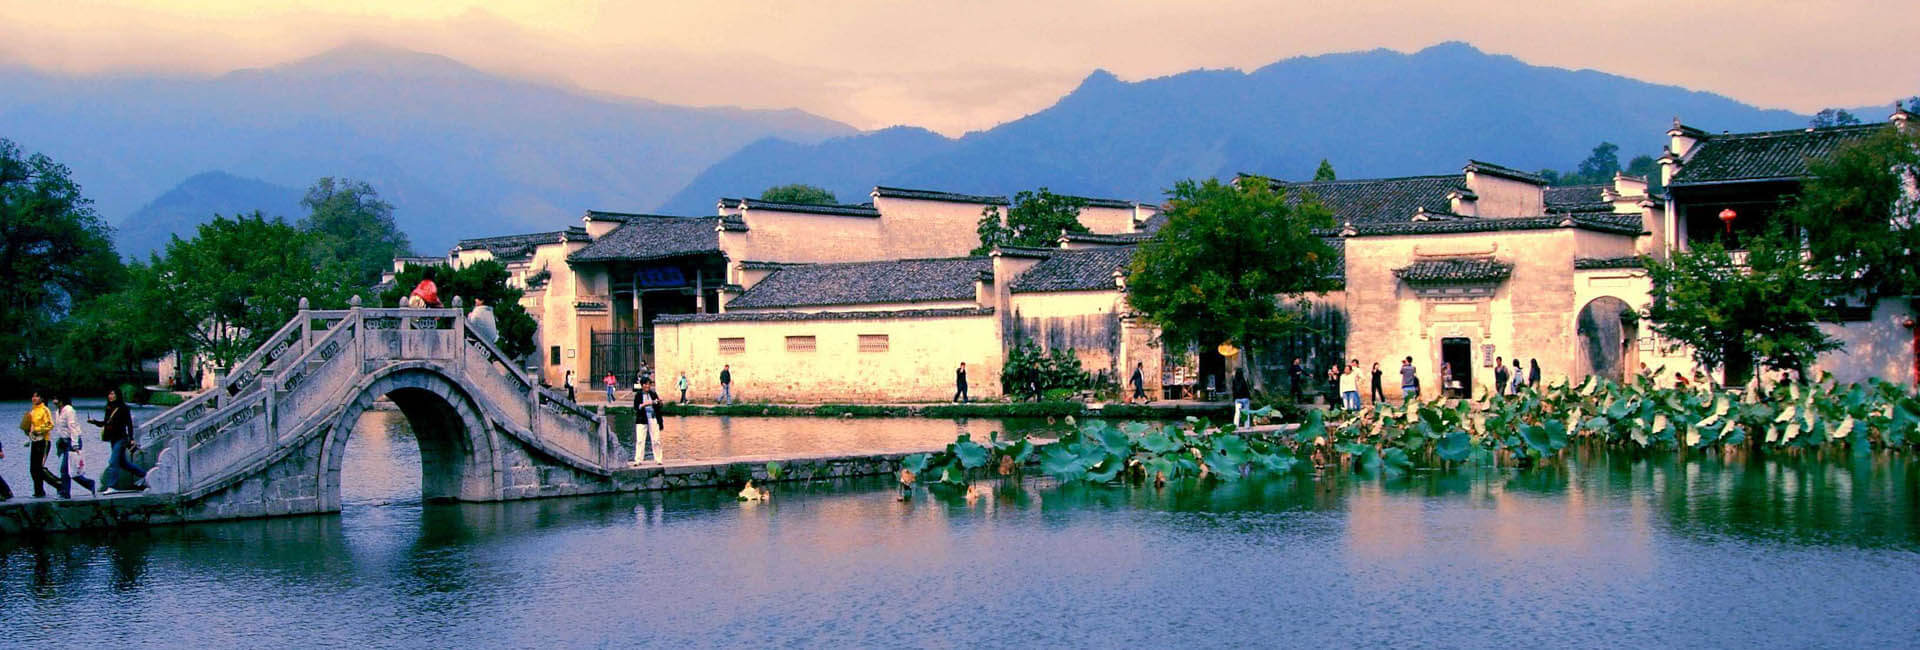 6 Days Xiamen Nanjing Tulou & Yellow Mountain Amusing Tour